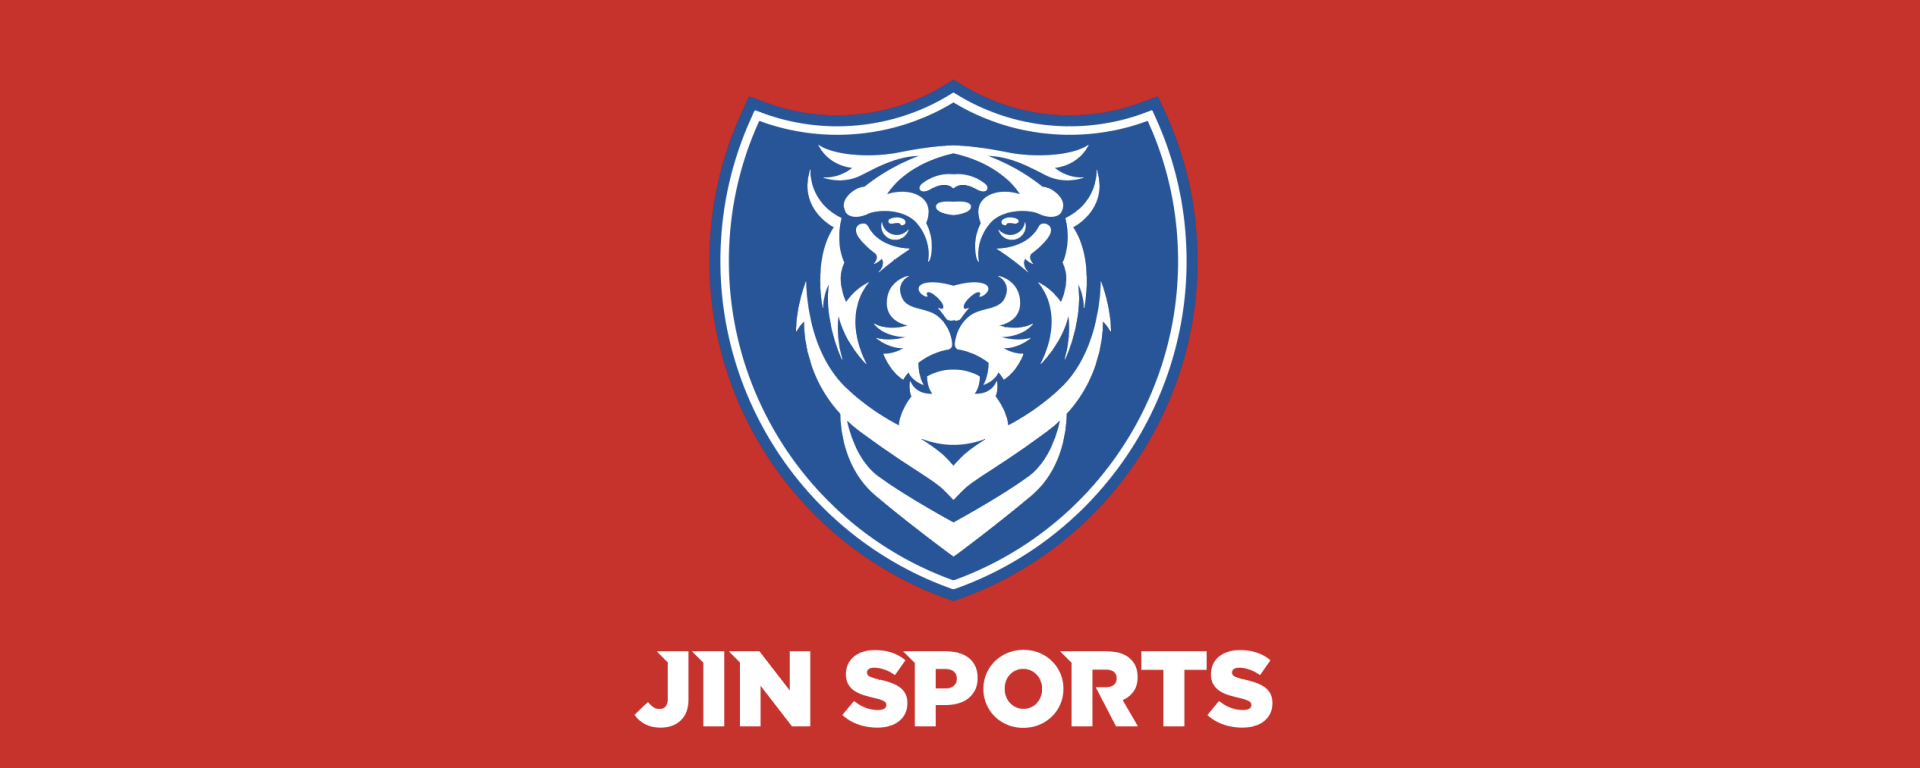 Jin Logo - JIN SPORTS BRAND LOGO DESIGN